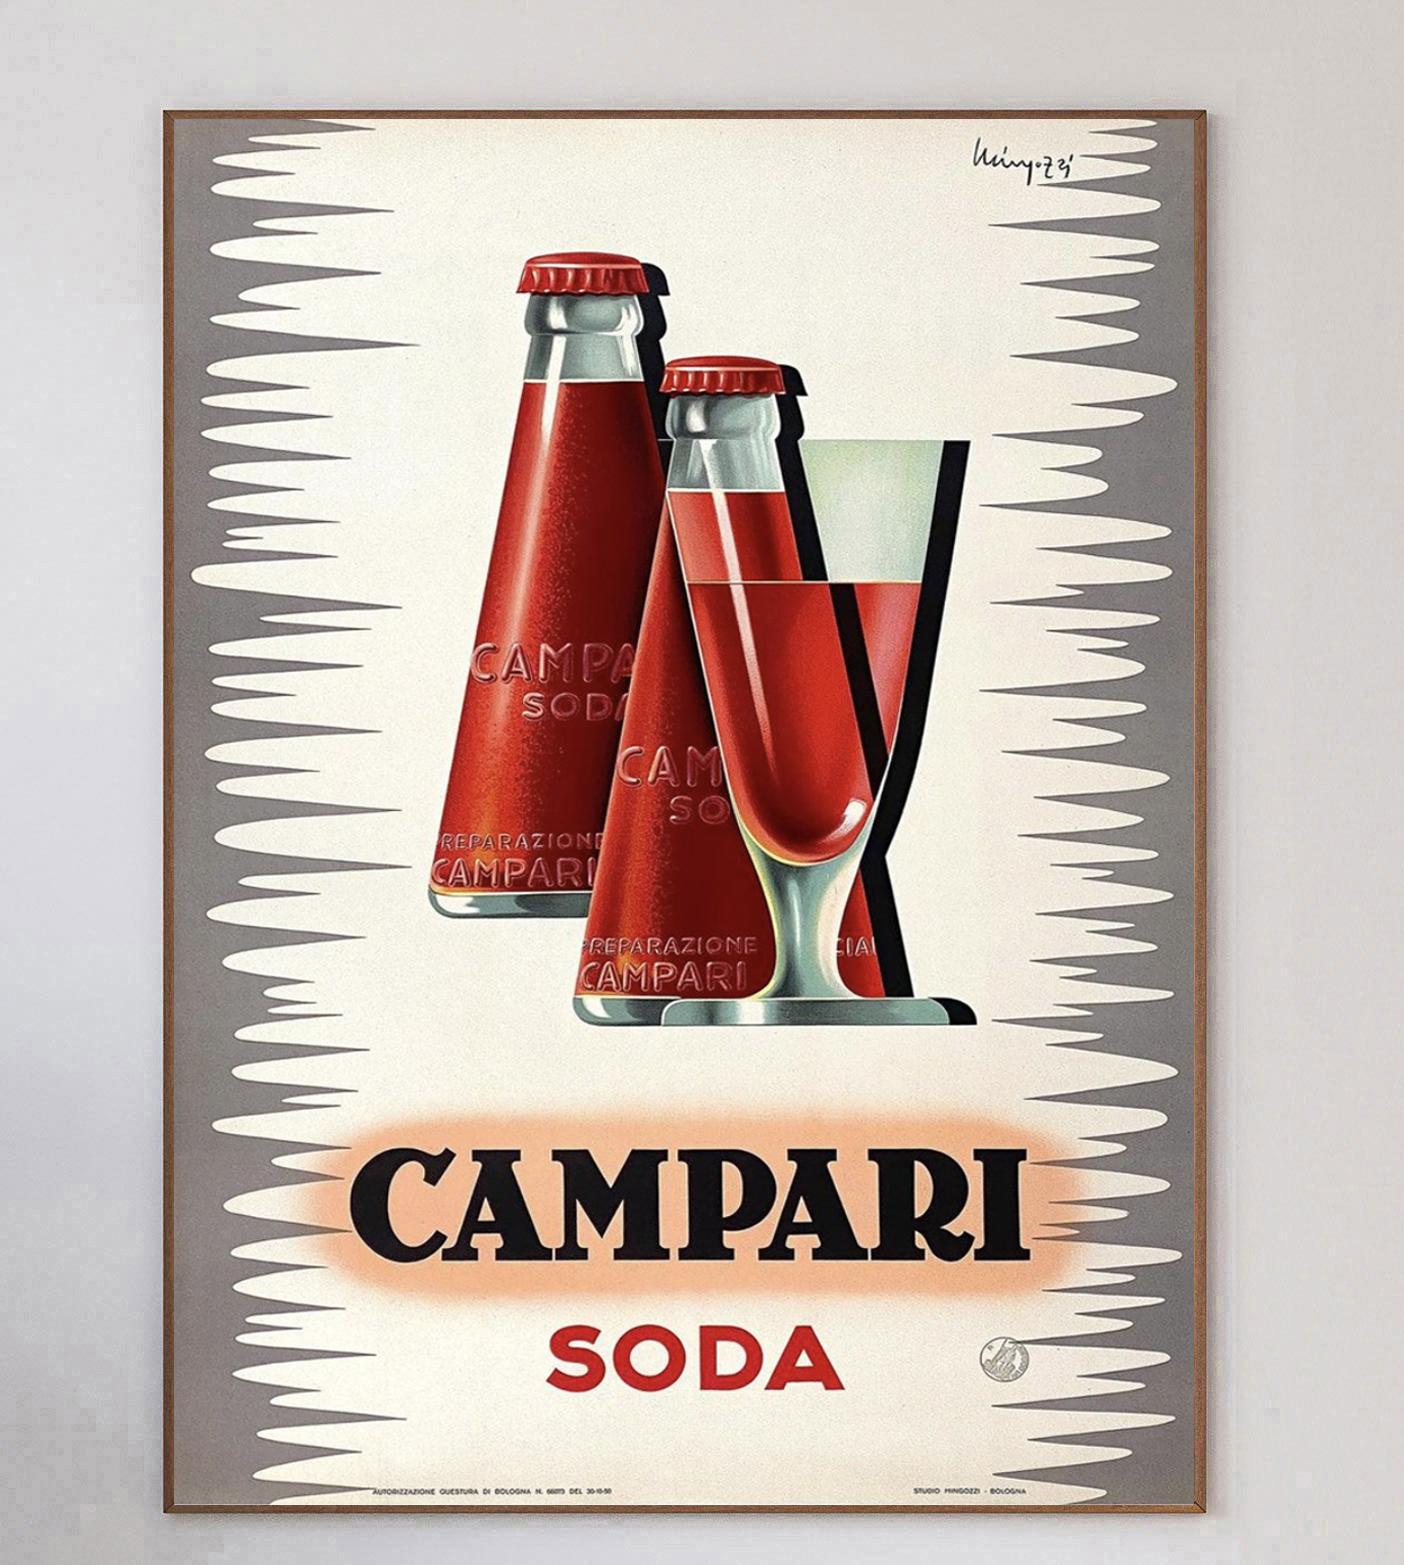 Superbe affiche conçue par l'artiste italien Giovanni Mingozzi pour Campari Soda, créée en 1950. Cette pièce magnifique et vibrante représente la bouteille de soda Campari conçue par l'artiste futuriste Fortunato Depero. 

L'emblématique marque de